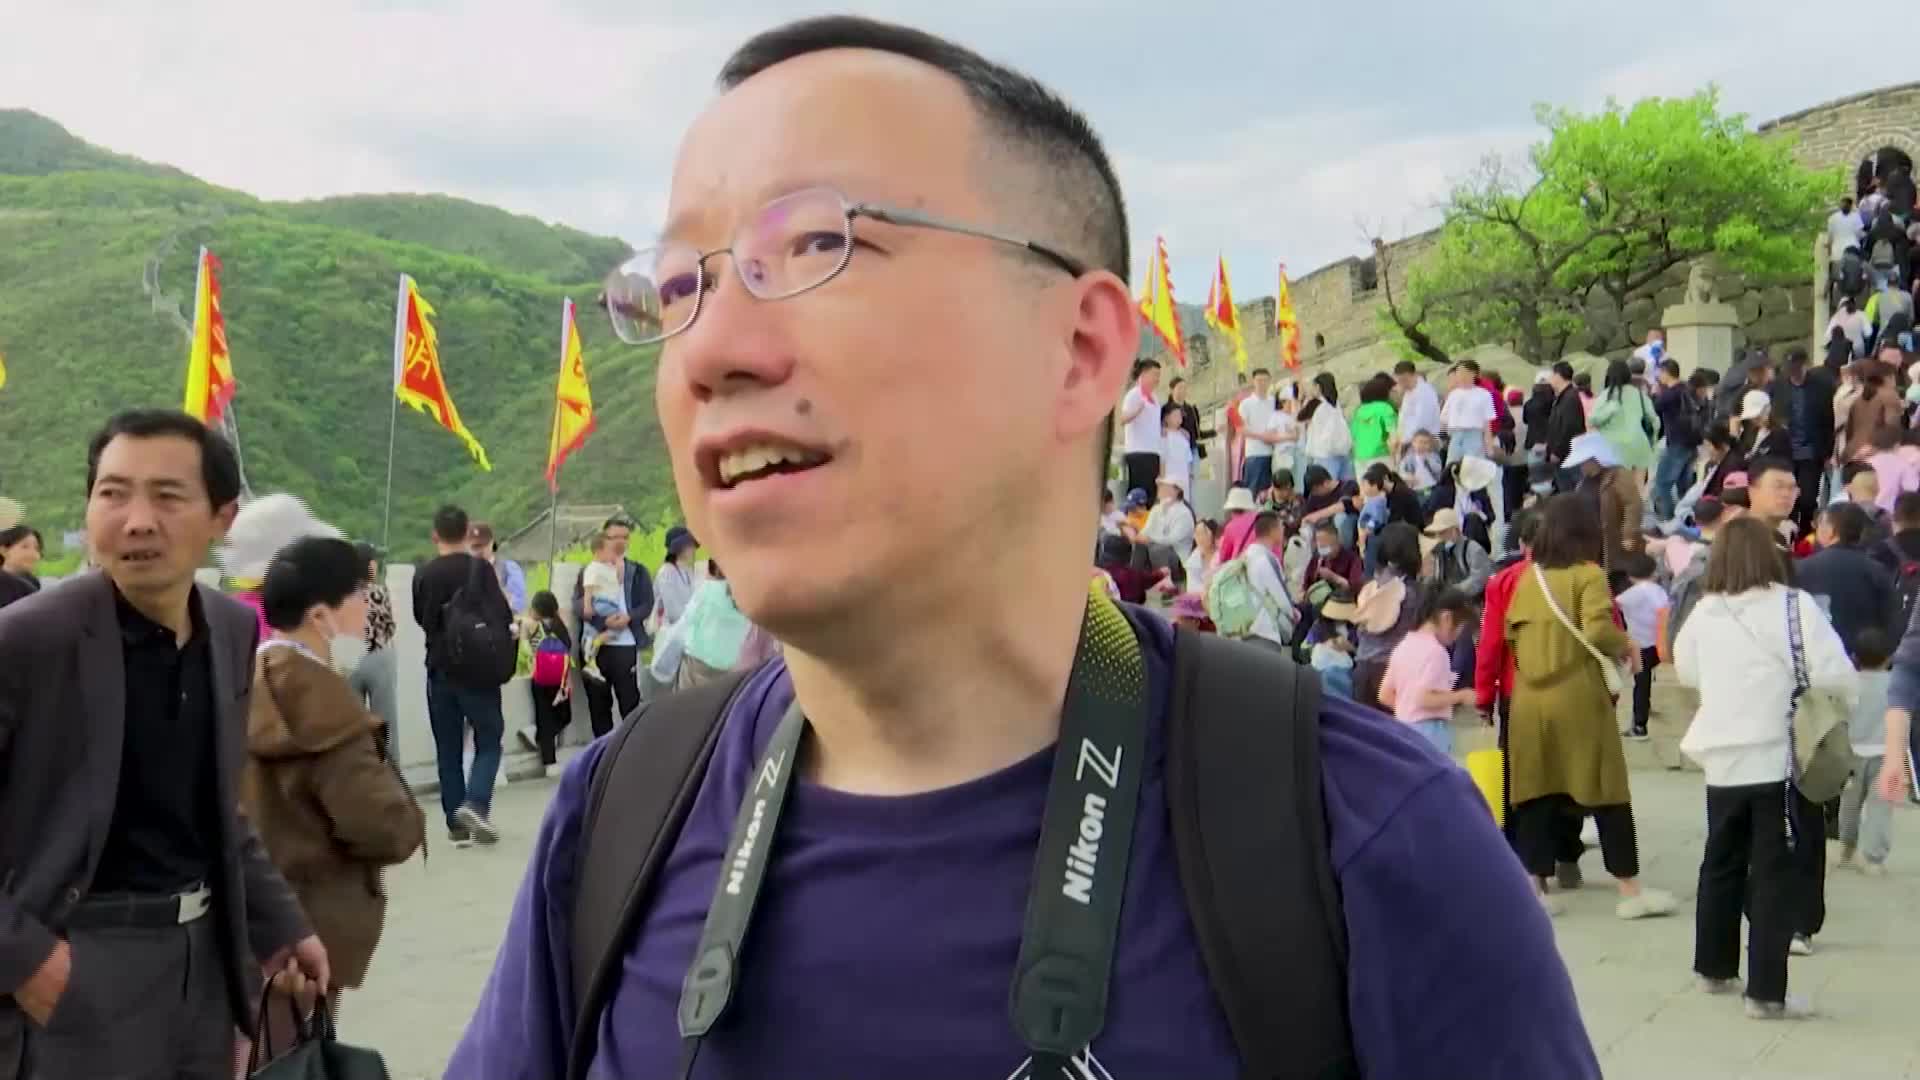 Хиляди туристи посетиха Великата китайска стена по време на Деня на труда (ВИДЕО)